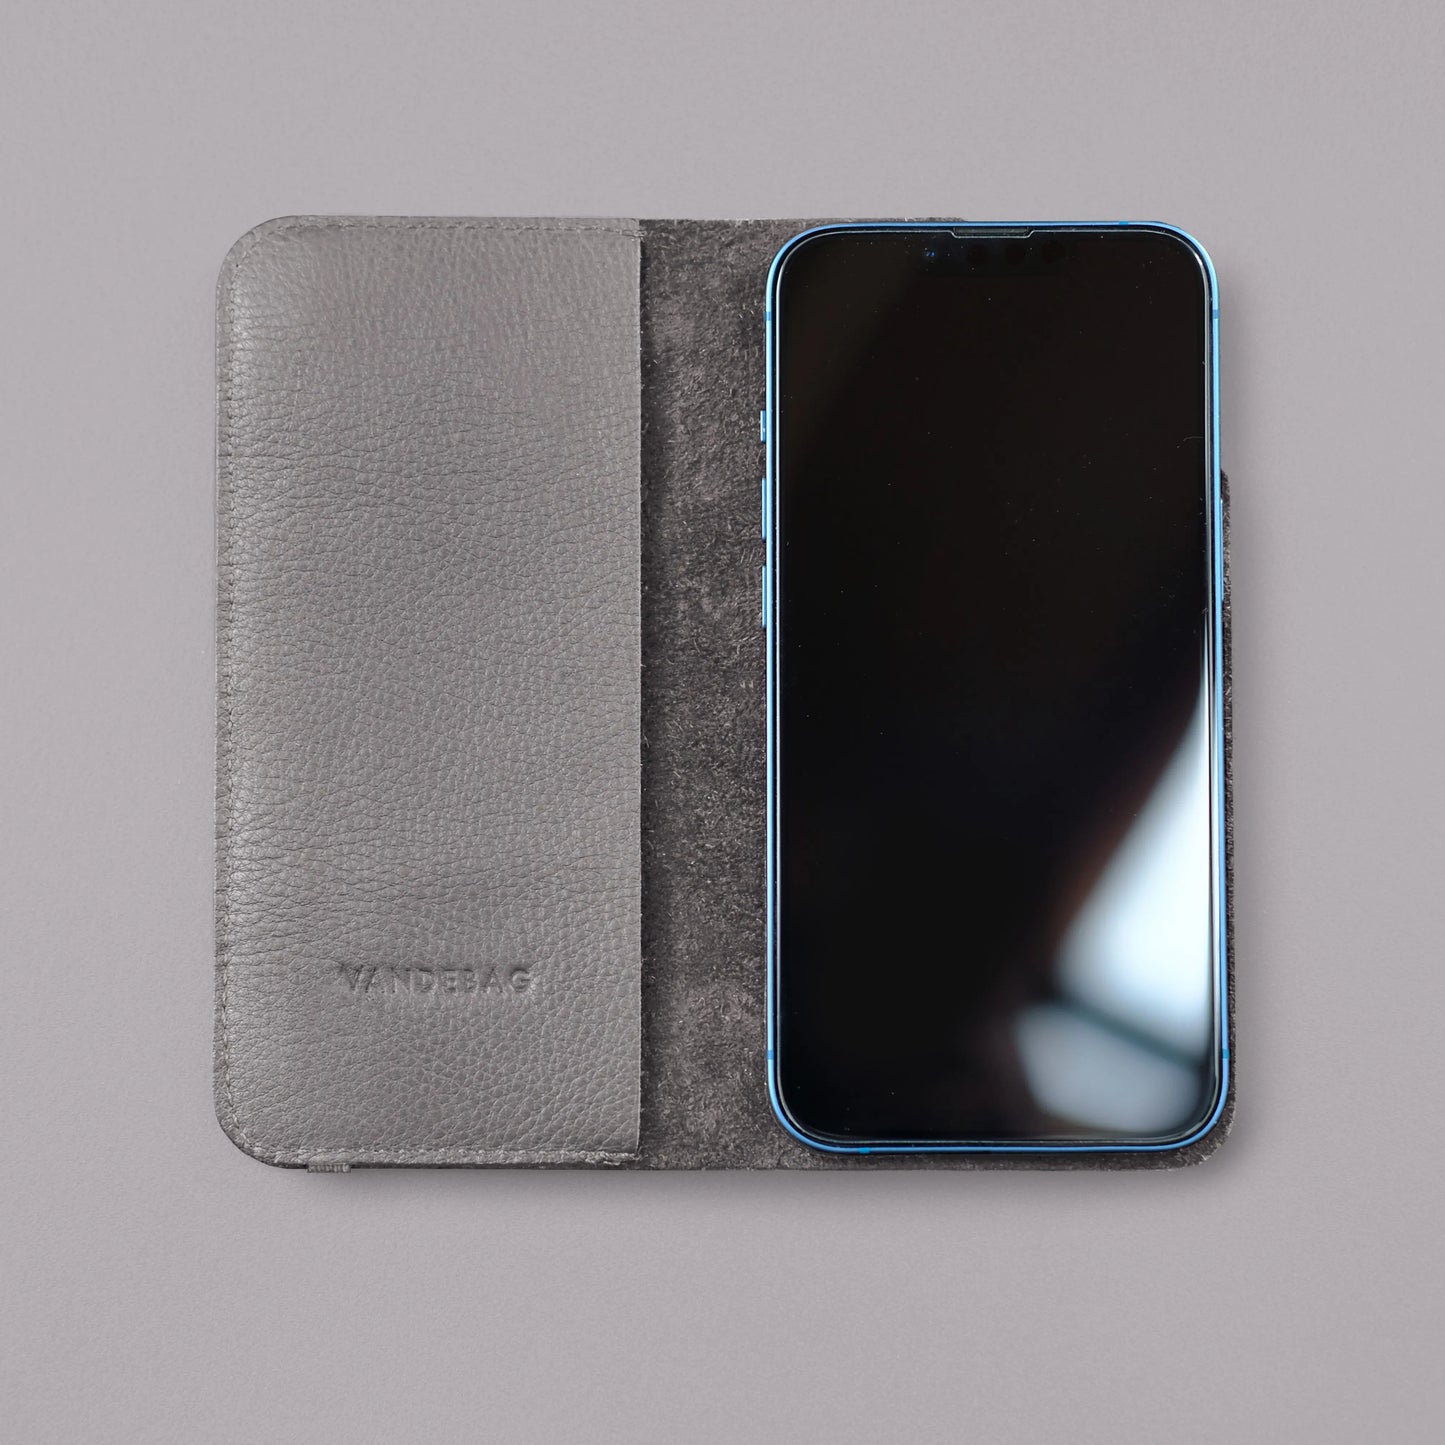 iPhone Klapphülle aus grauem Rindsleder mit Prägung von Vandebag